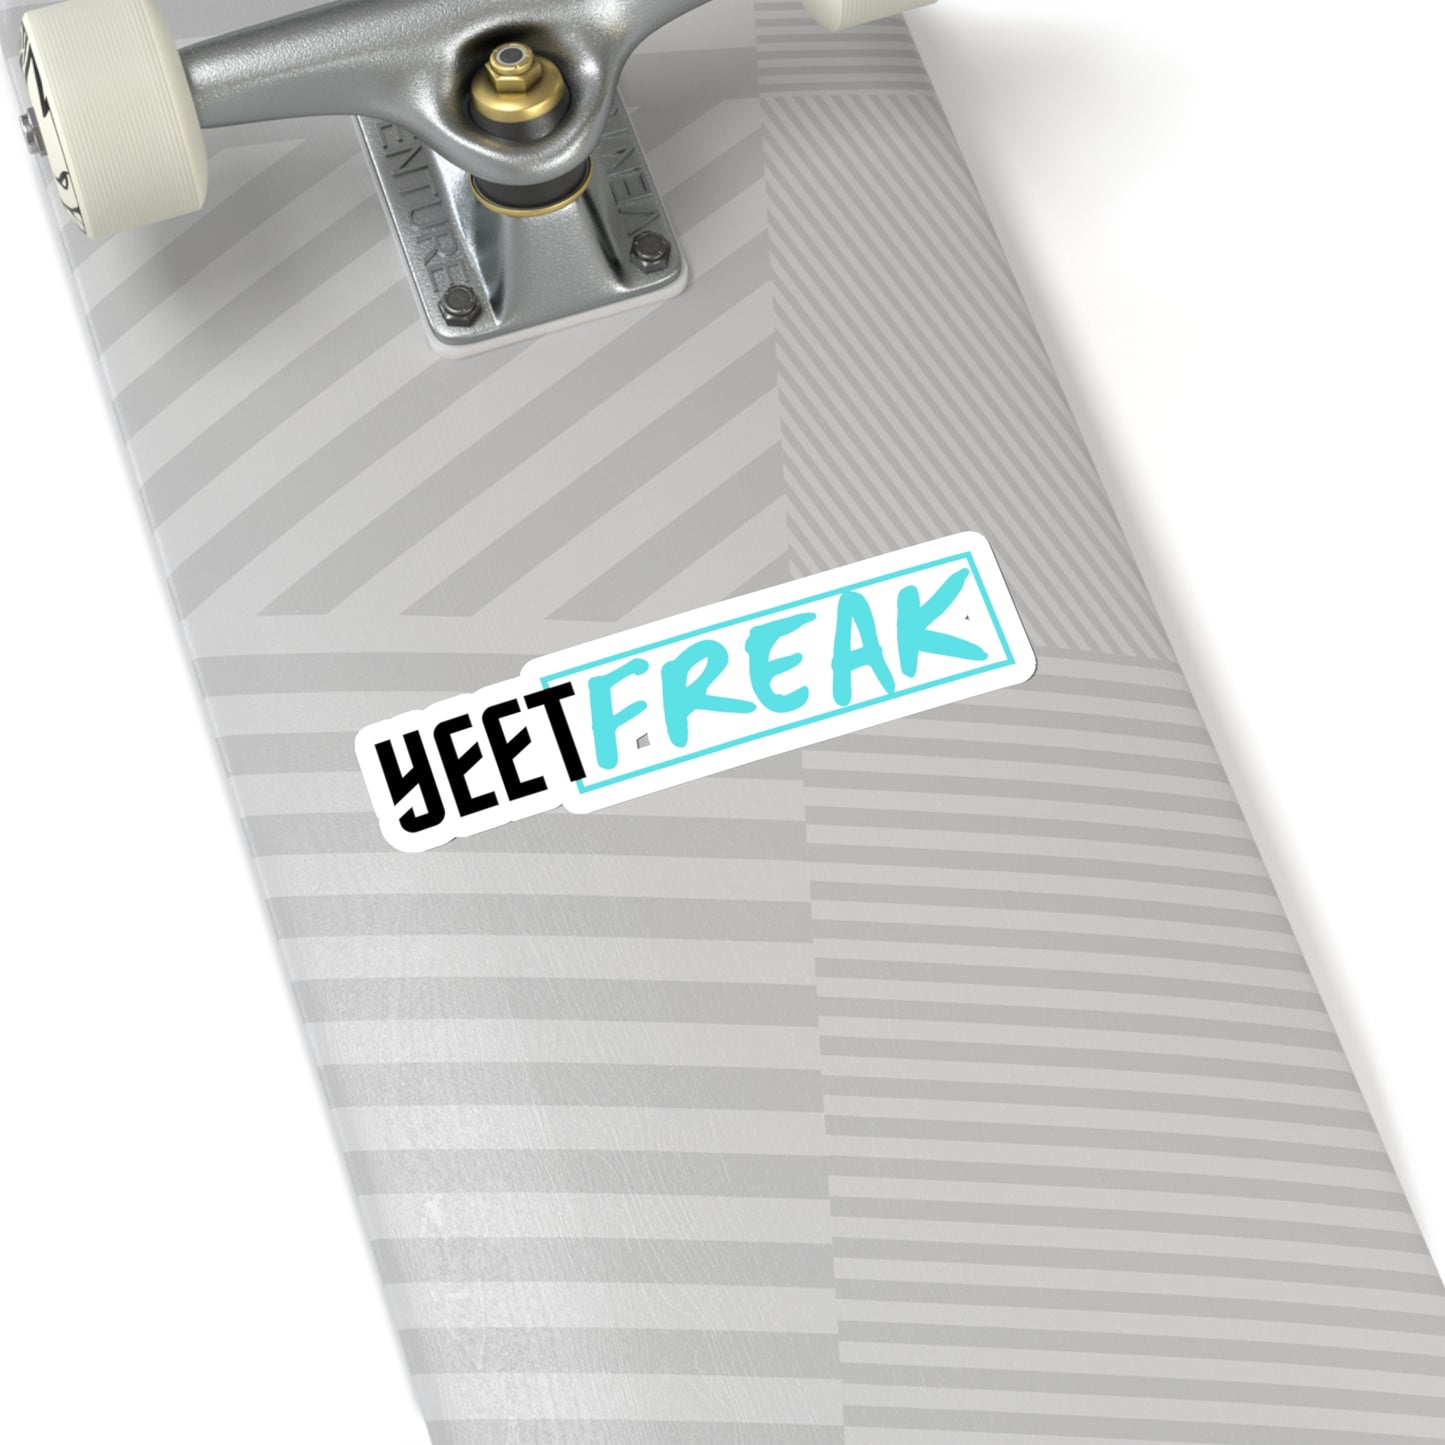 Yeet Freak Stickers